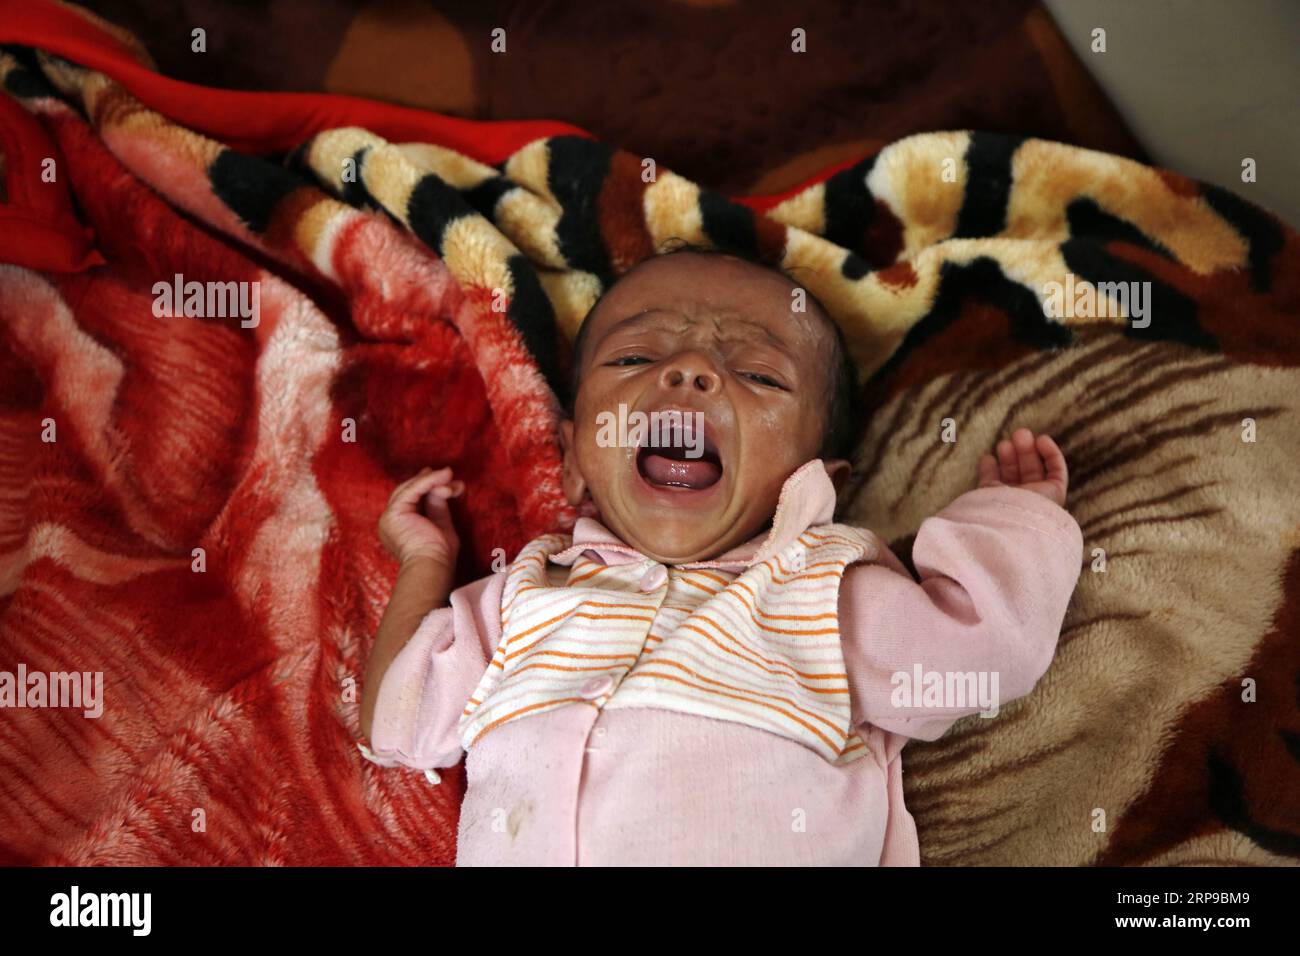 (190401) -- SANAA, 1 aprile 2019 -- Un bambino malnutrito piange in un centro di cura della malnutrizione a Sanaa, Yemen, il 1 aprile 2019. Secondo il Fondo delle Nazioni Unite per l'infanzia (UNICEF), circa 394.000 bambini yemeniti sotto i 5 anni soffrono di grave malnutrizione acuta e necessitano di cure. YEMEN-SANAA-BAMBINI-MALNUTRIZIONE MohammedxMohammed PUBLICATIONxNOTxINxCHN Foto Stock